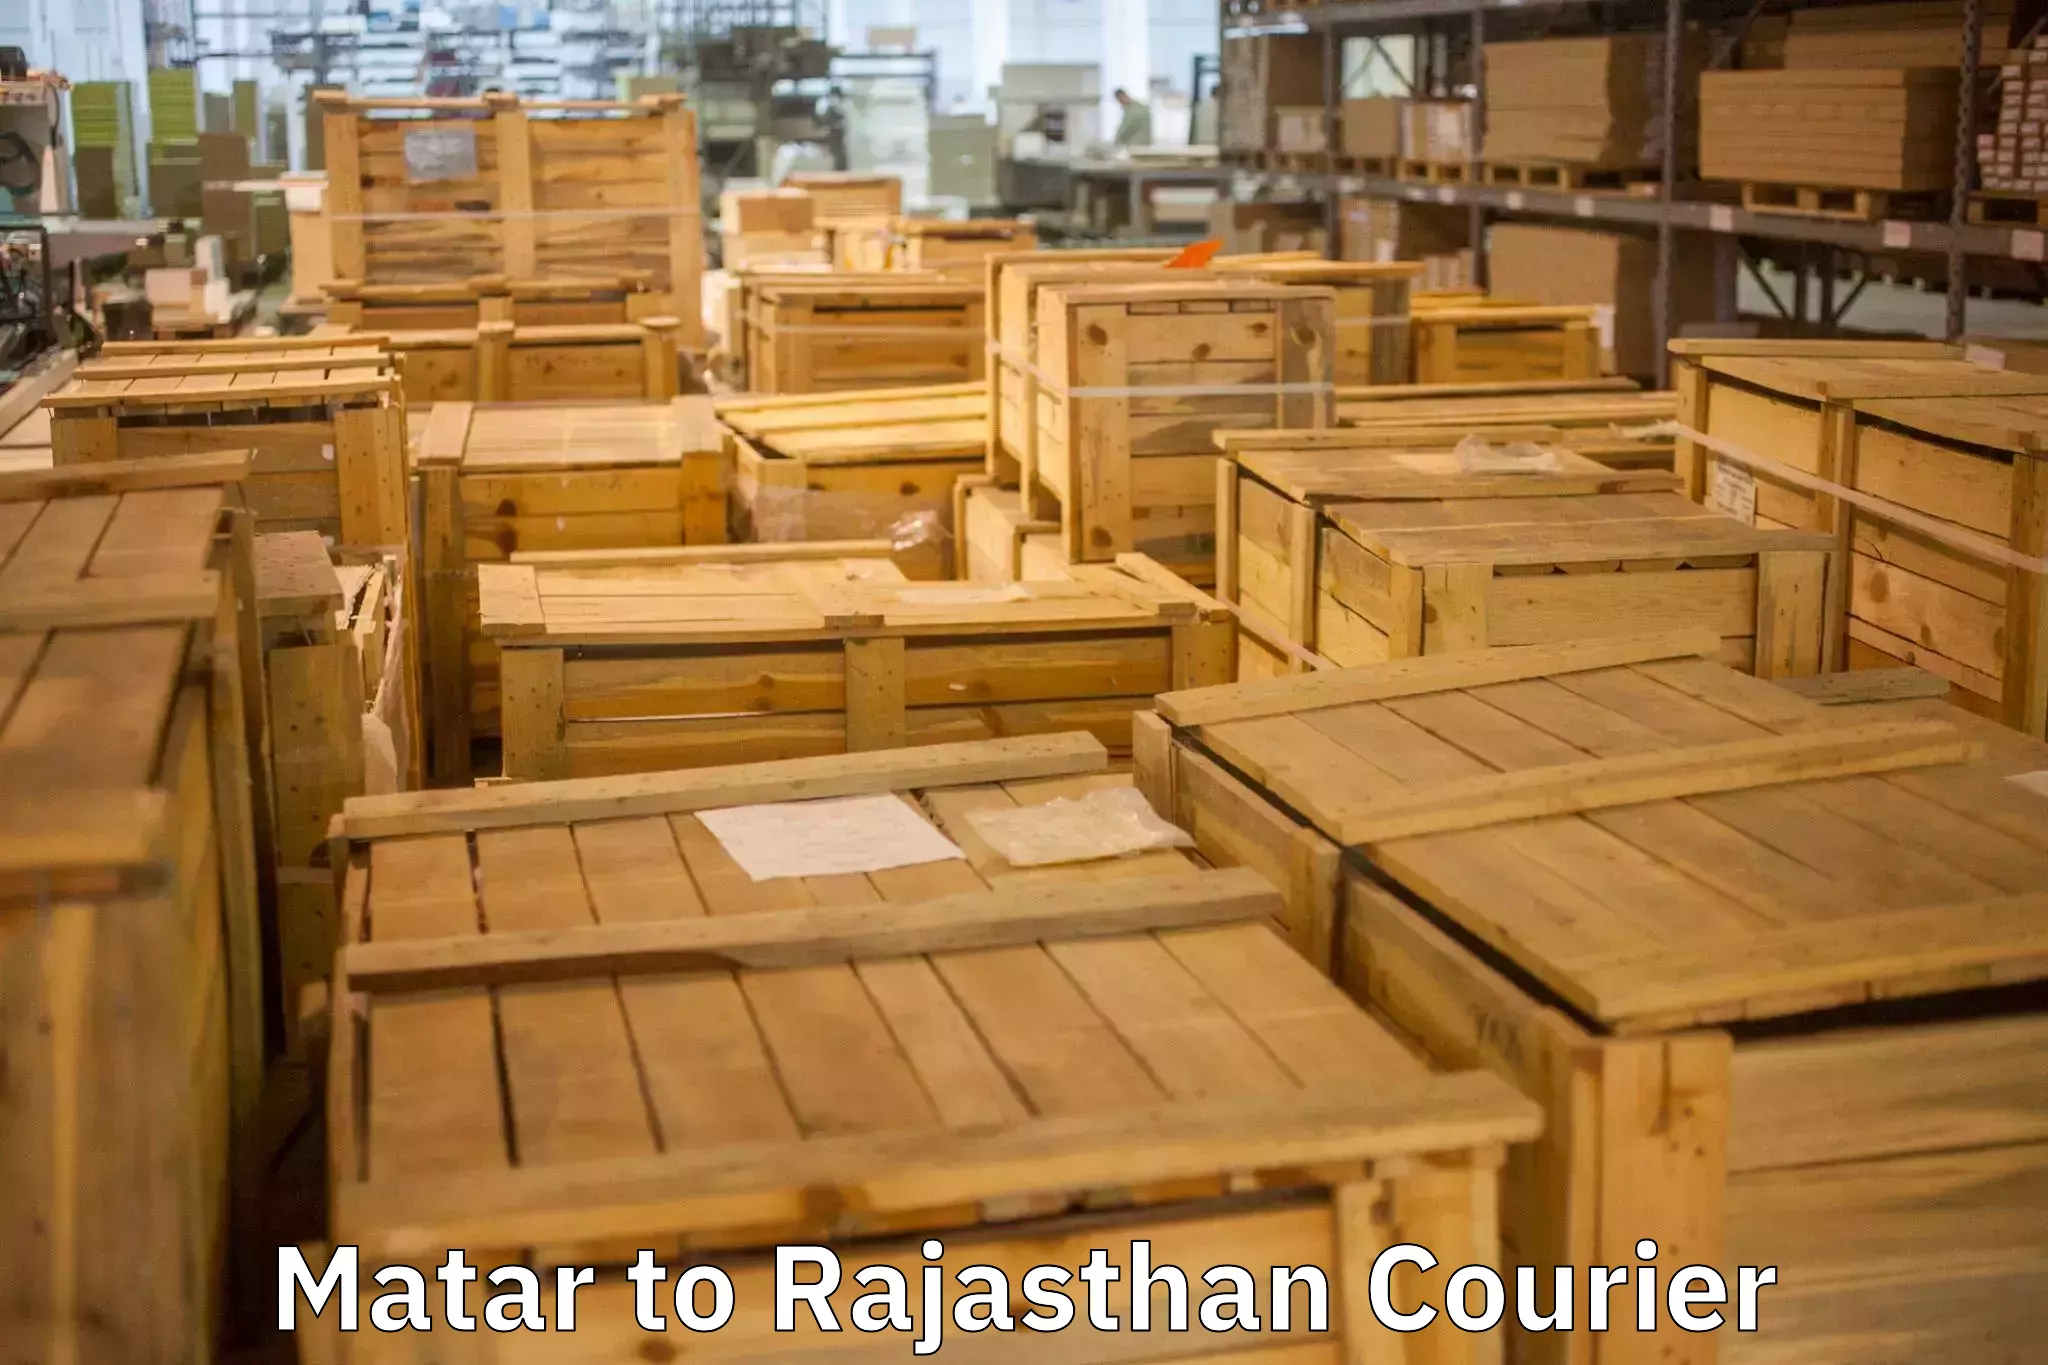 Professional moving company Matar to Jawahar Nagar